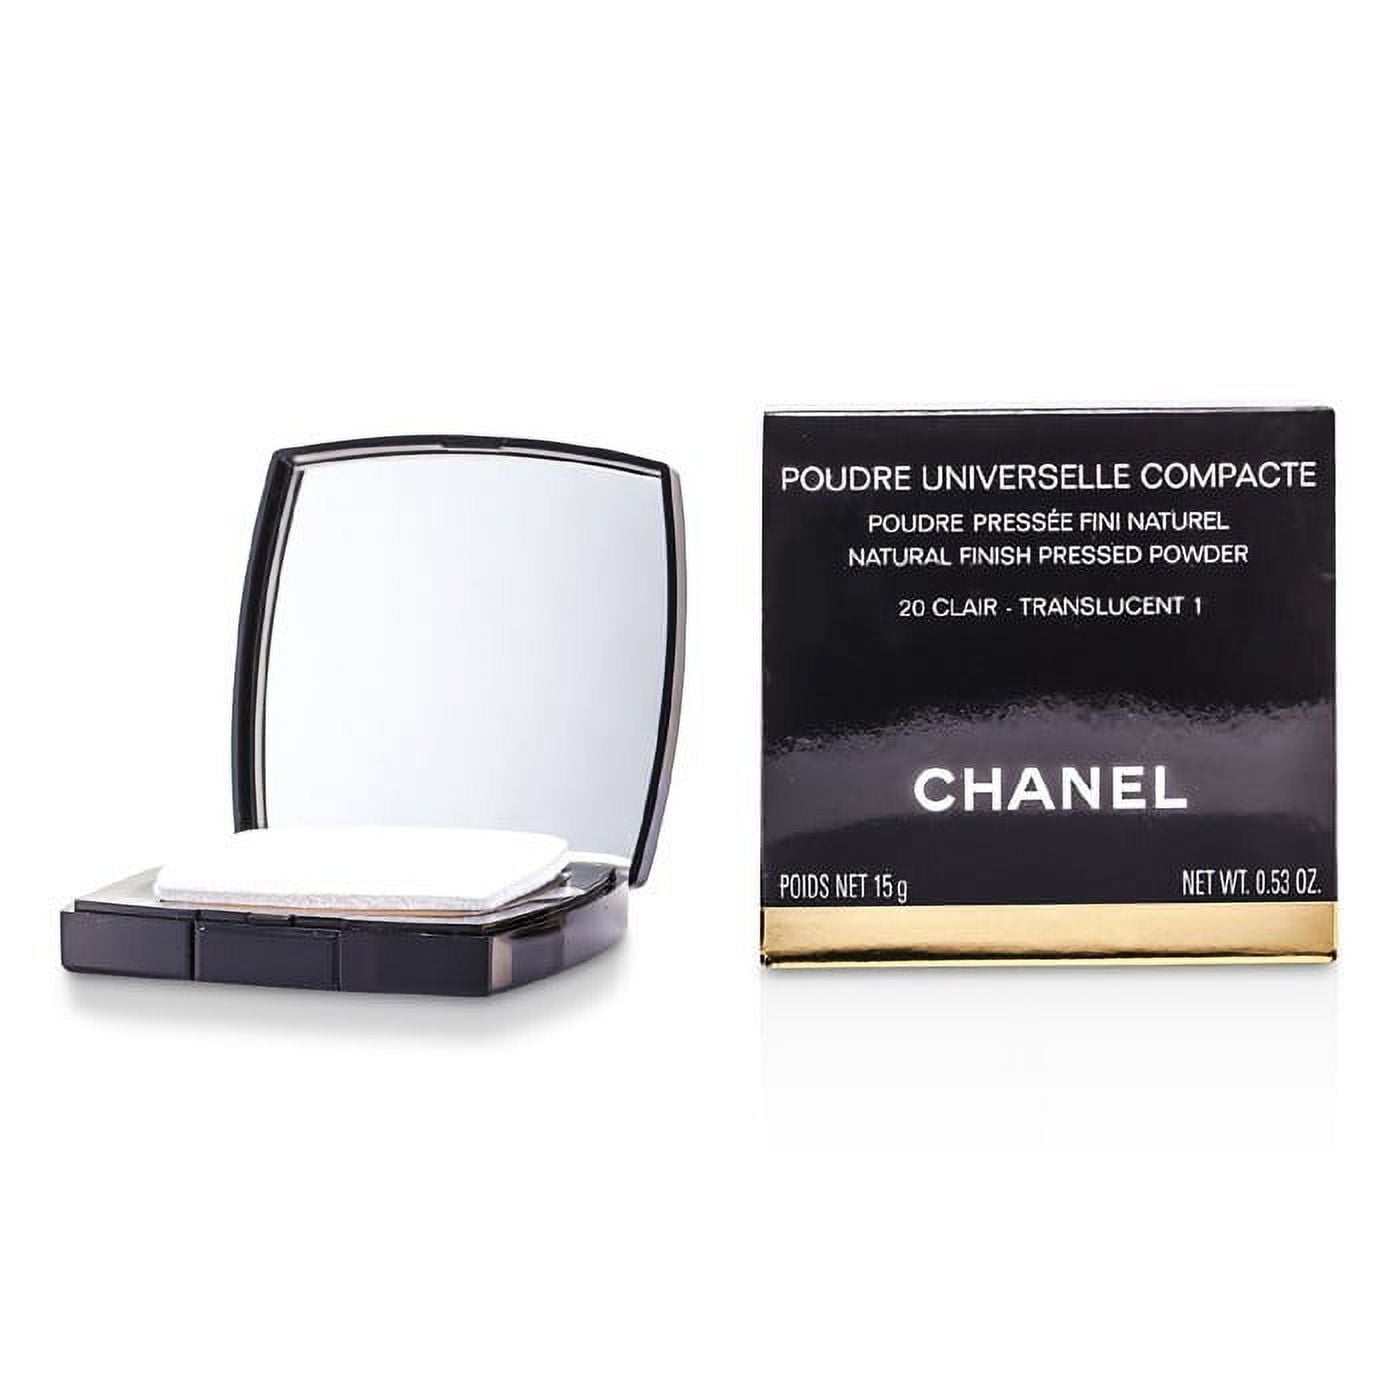 Chanel Poudre Universelle Compacte - # 20 Clair Translucent 1 0.5 oz Powder  